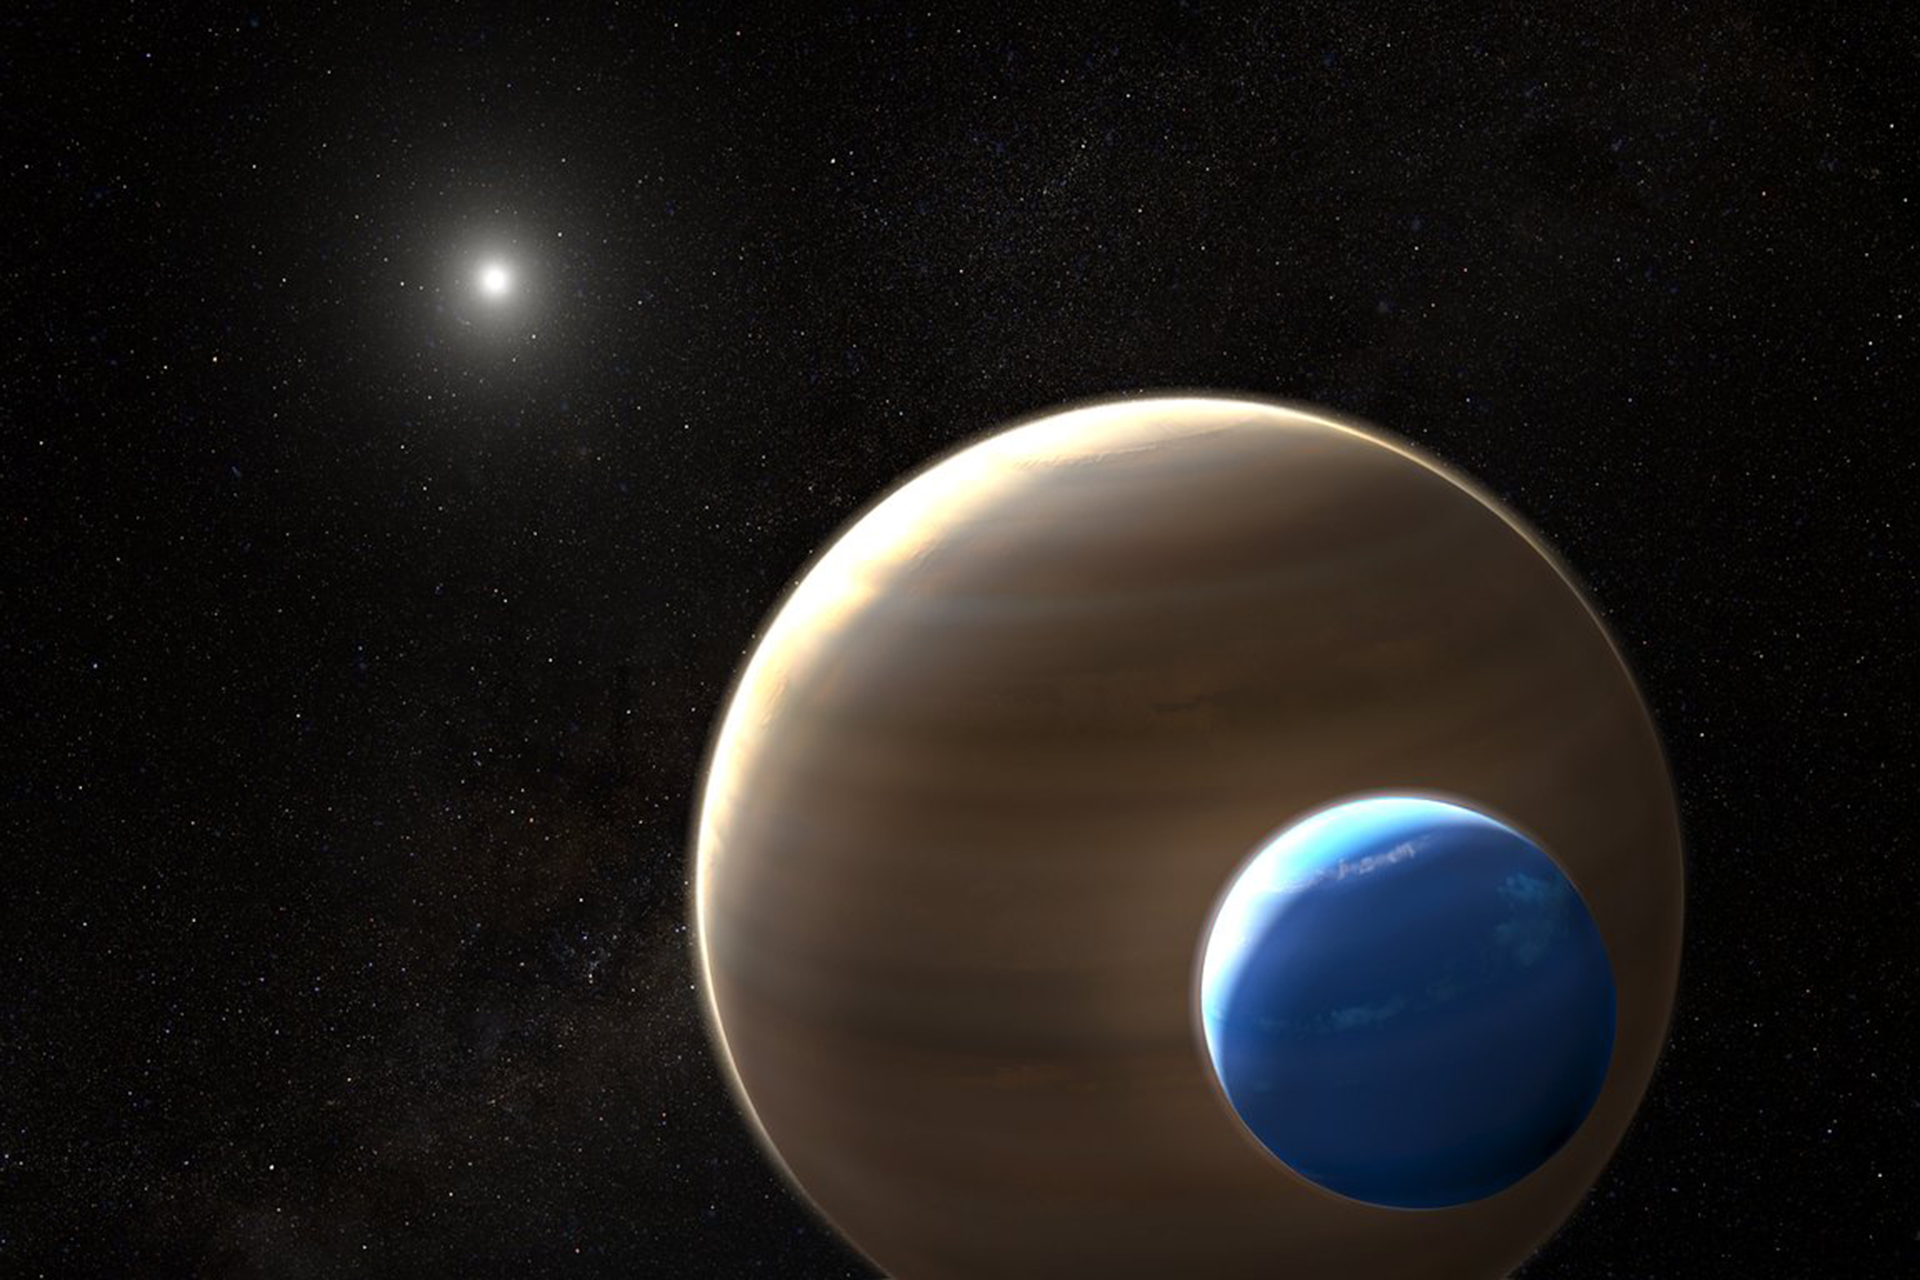 الكواكب الثنائية أكثر مما نظن ويُحتمل وجود الحياة فيها | علوم – البوكس نيوز